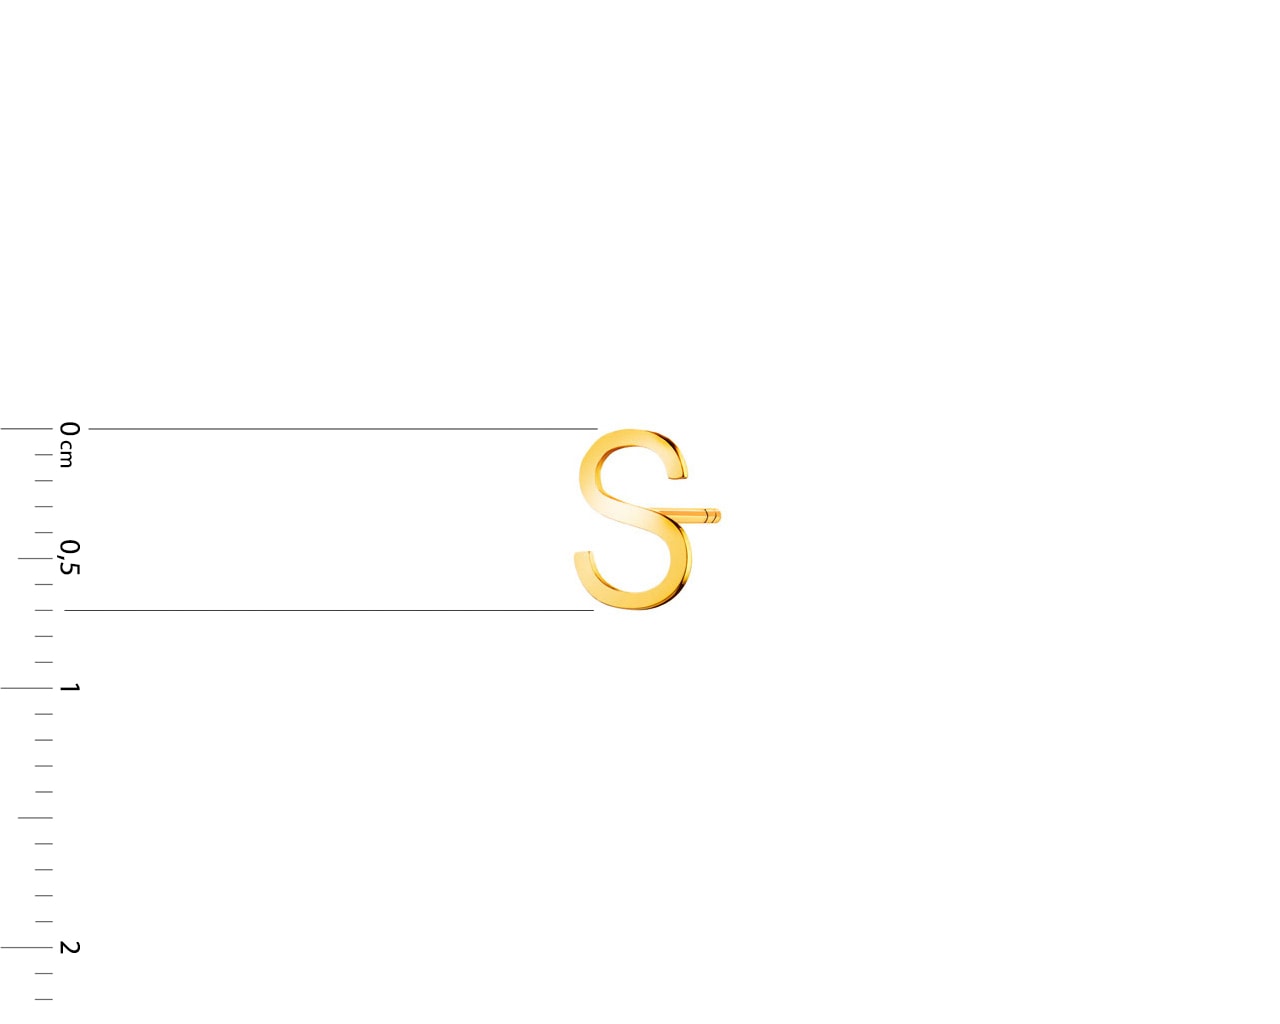 Złoty kolczyk - litery S